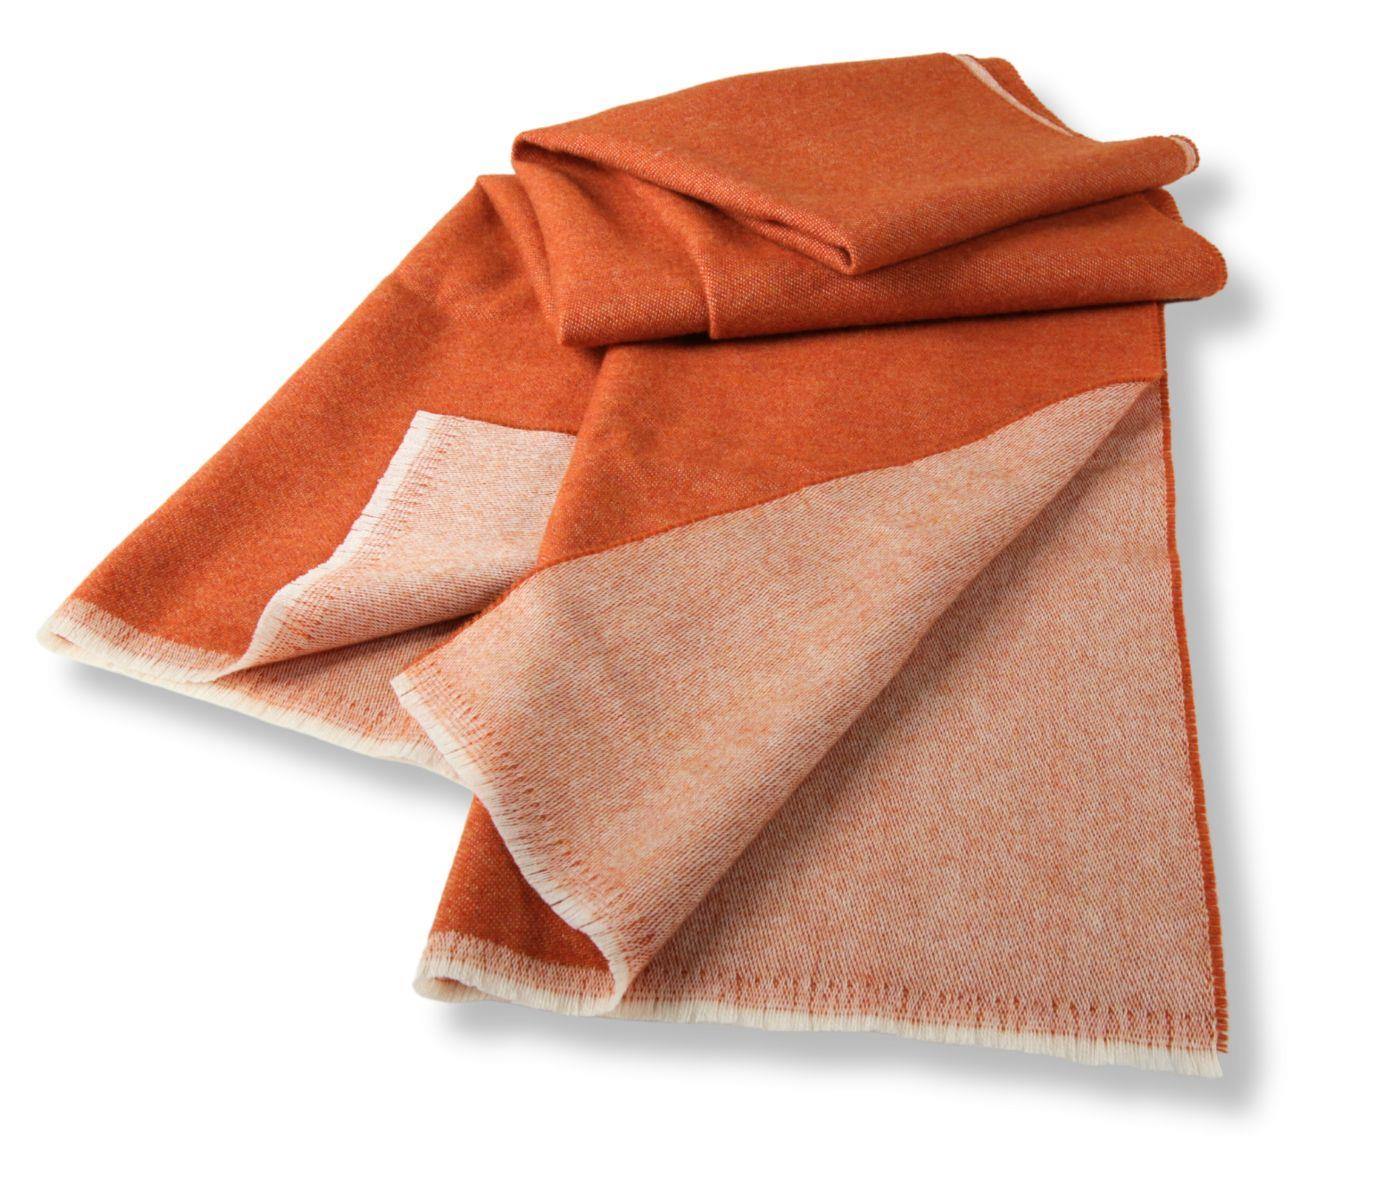 Eagle Products Schal aus Schurwolle in orange, 45 x 190 cm